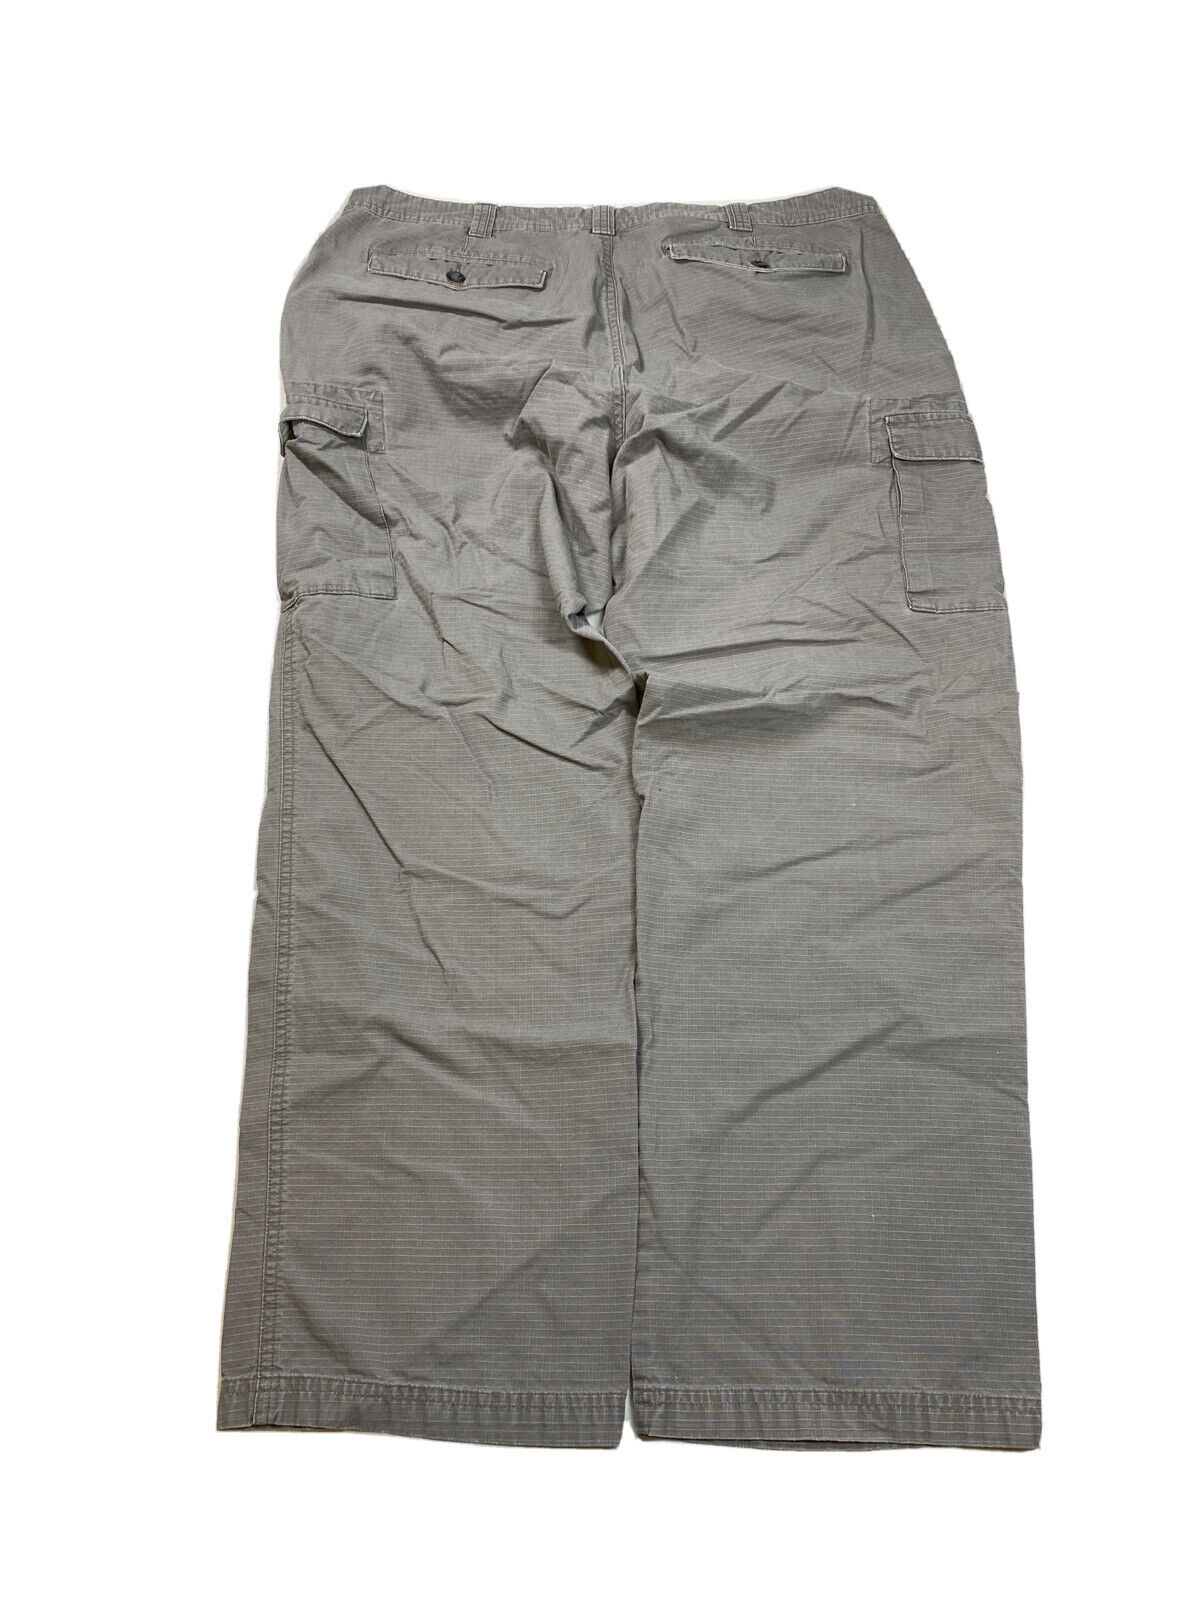 Cabela's Men's Gray Classic Fit Cargo Pants - 40x32